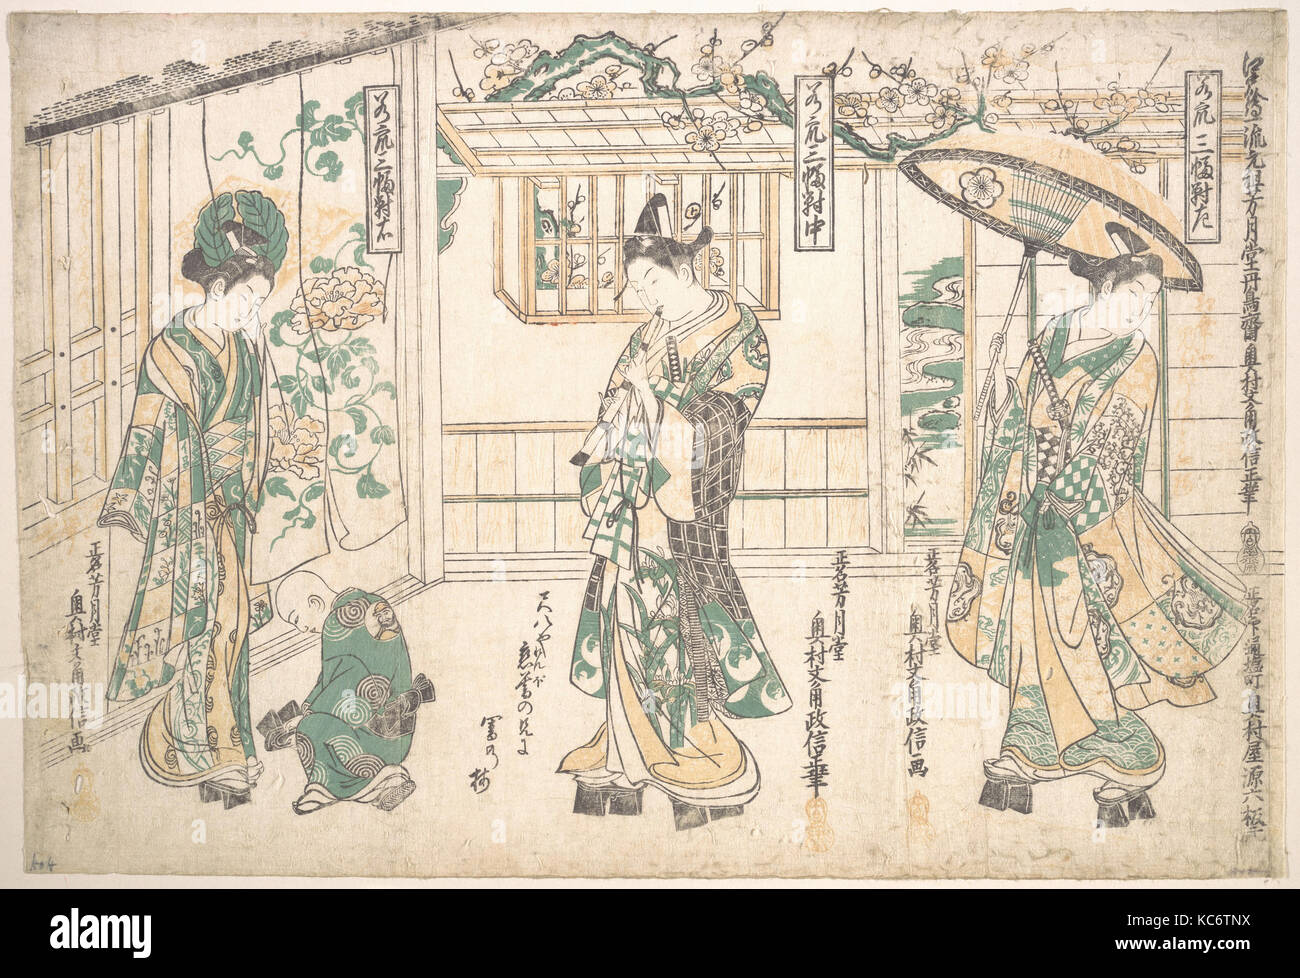 Tripytych de hombres jóvenes, del período Edo (1615-1868), el Japón, indivisa tríptico de impresos xilográficos policromadas; tinta y color sobre papel Foto de stock